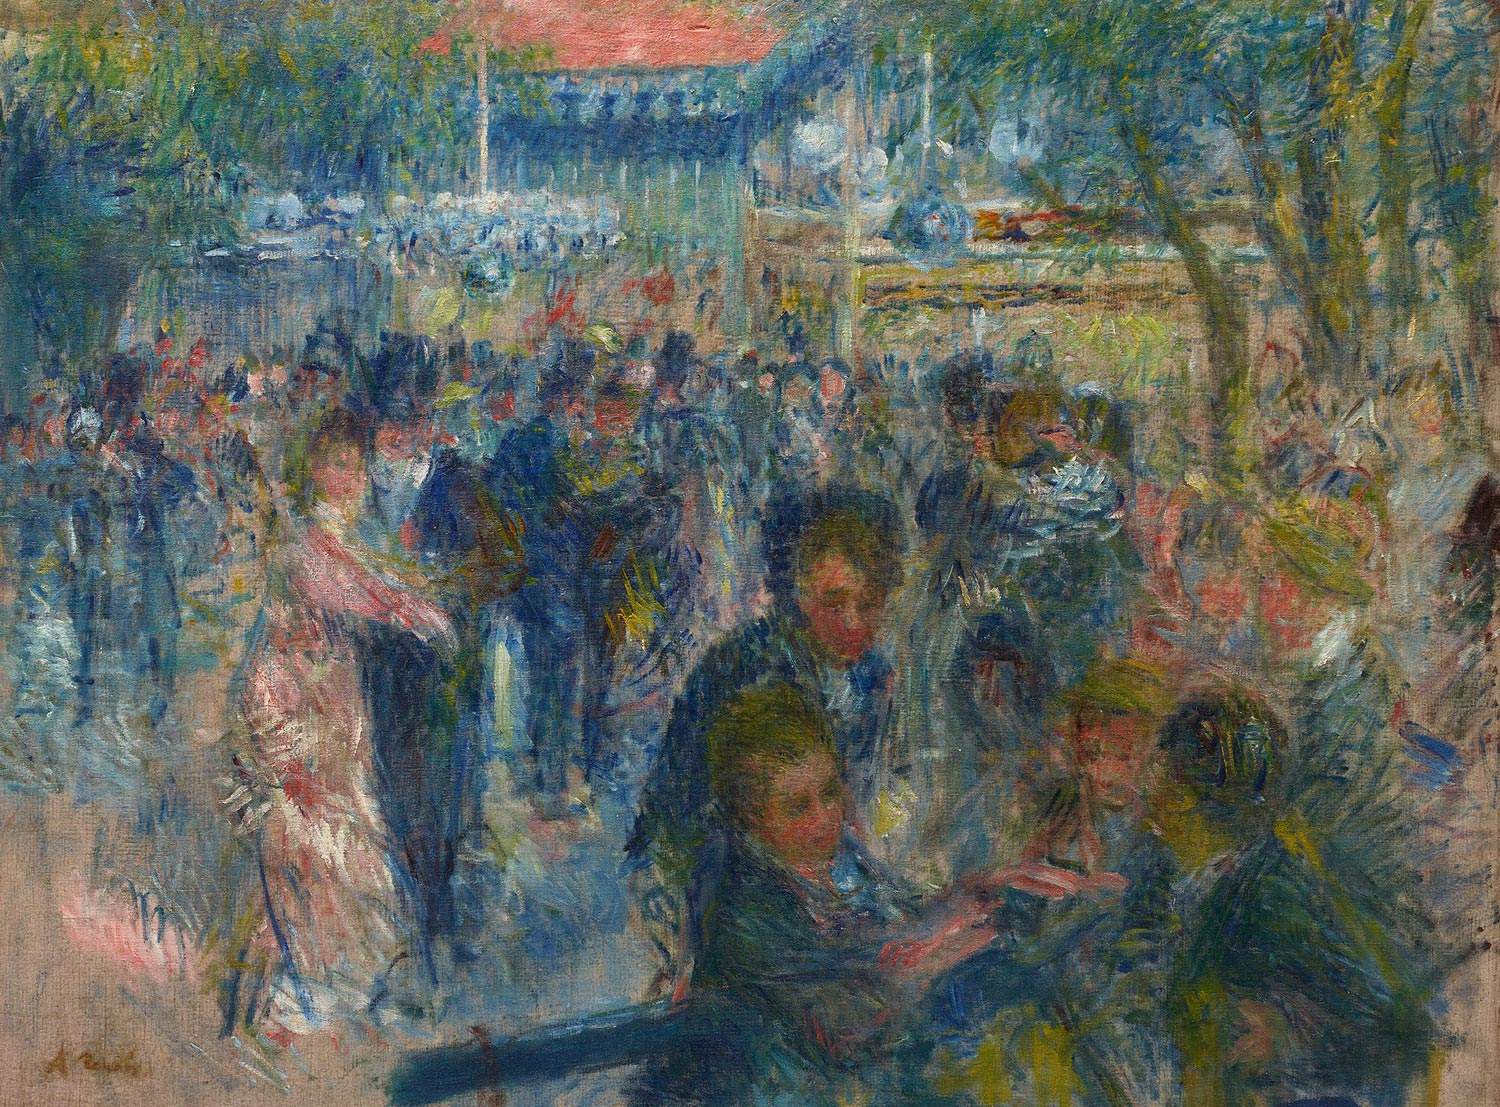 La mostra su Renoir a Rovigo raggiunge quasi il record storico con oltre 73mila visitatori